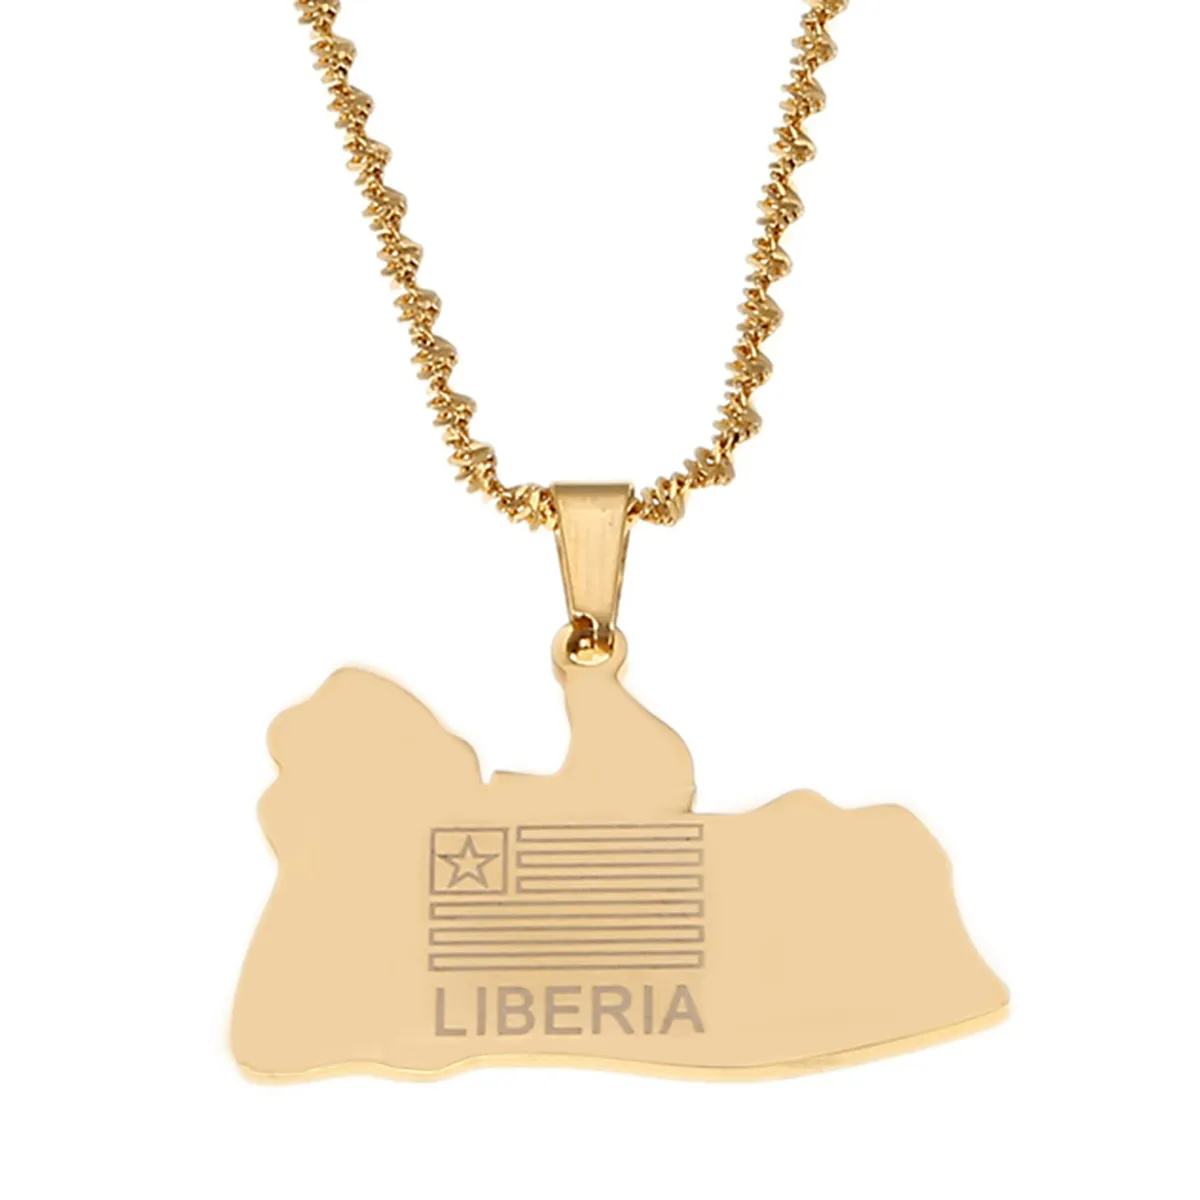 Colliers avec pendentif drapeau carte du LIBERIA, taille moyenne, bijoux libériens du moyen-orient